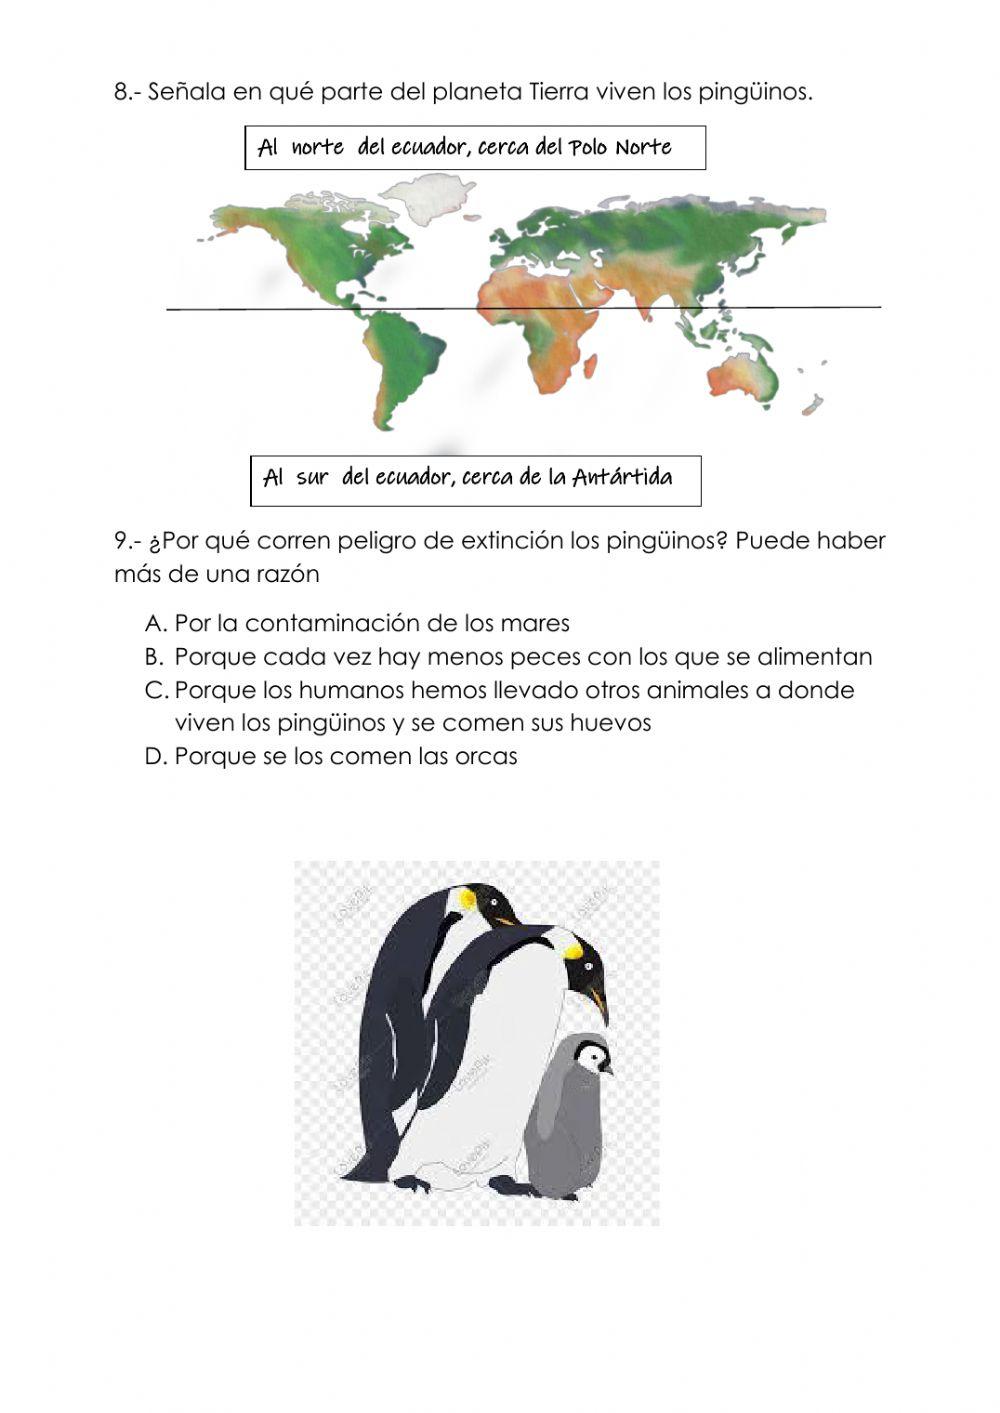 Pingo, el pingüino